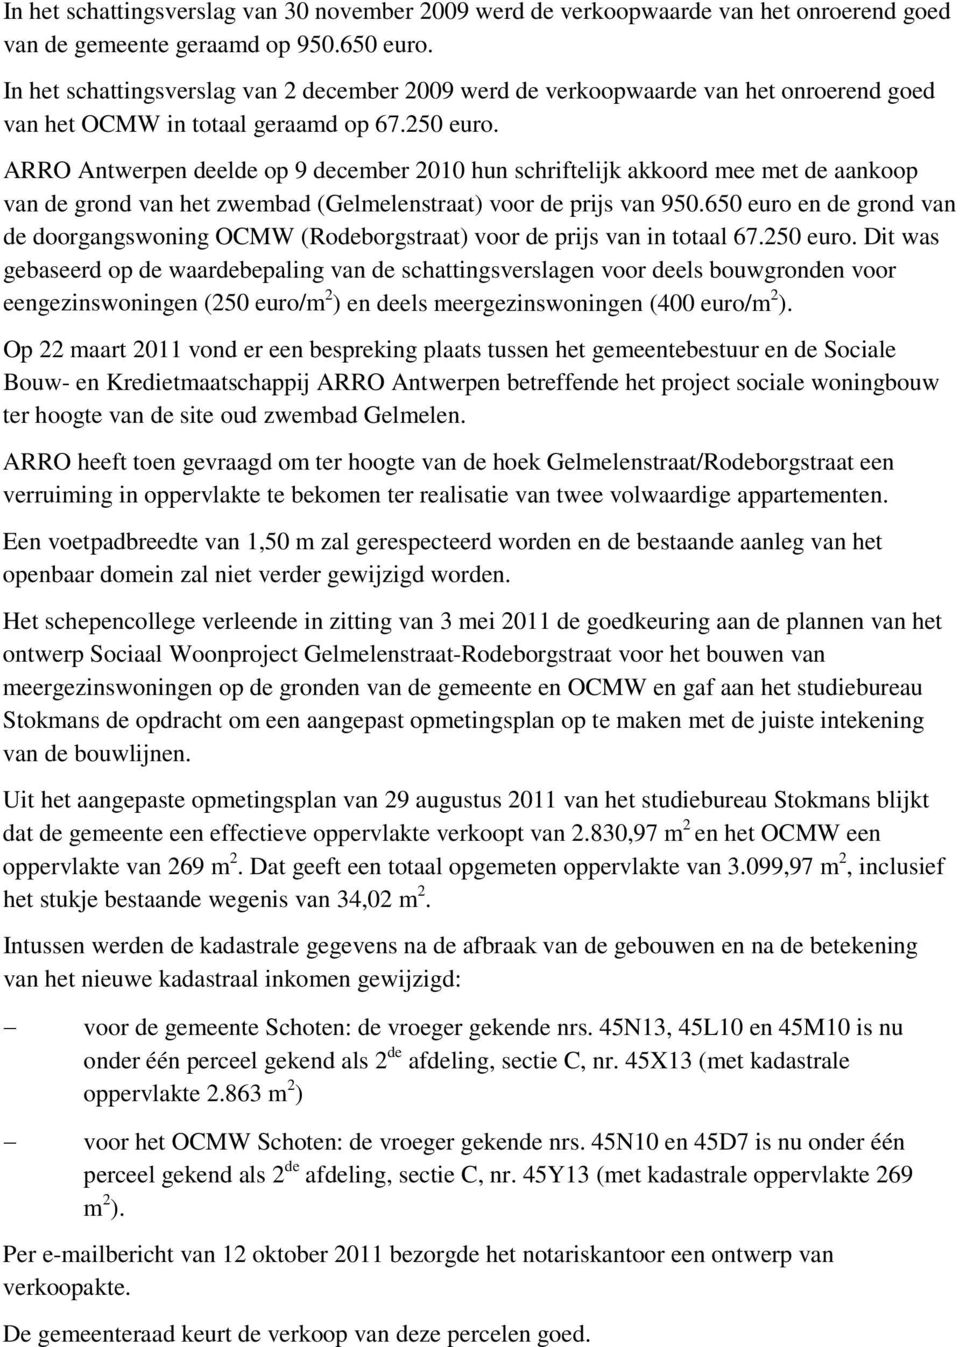 ARRO Antwerpen deelde op 9 december 2010 hun schriftelijk akkoord mee met de aankoop van de grond van het zwembad (Gelmelenstraat) voor de prijs van 950.